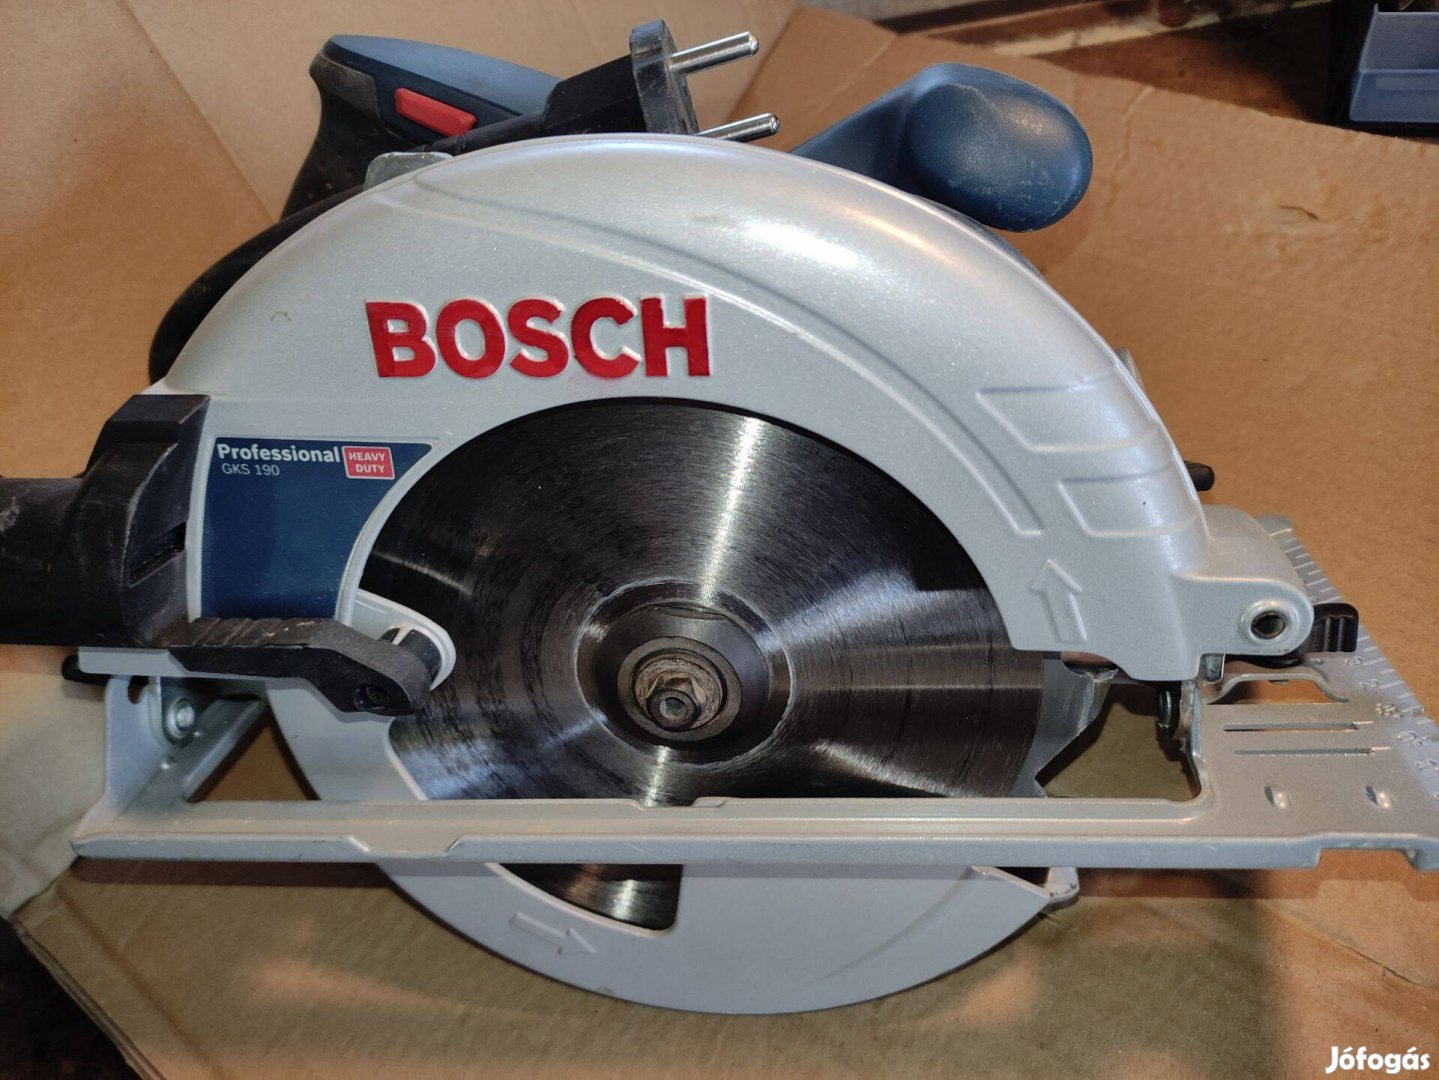 Új Bosch Profi körfűrész merülő fűrész kézi cirkula 1400W